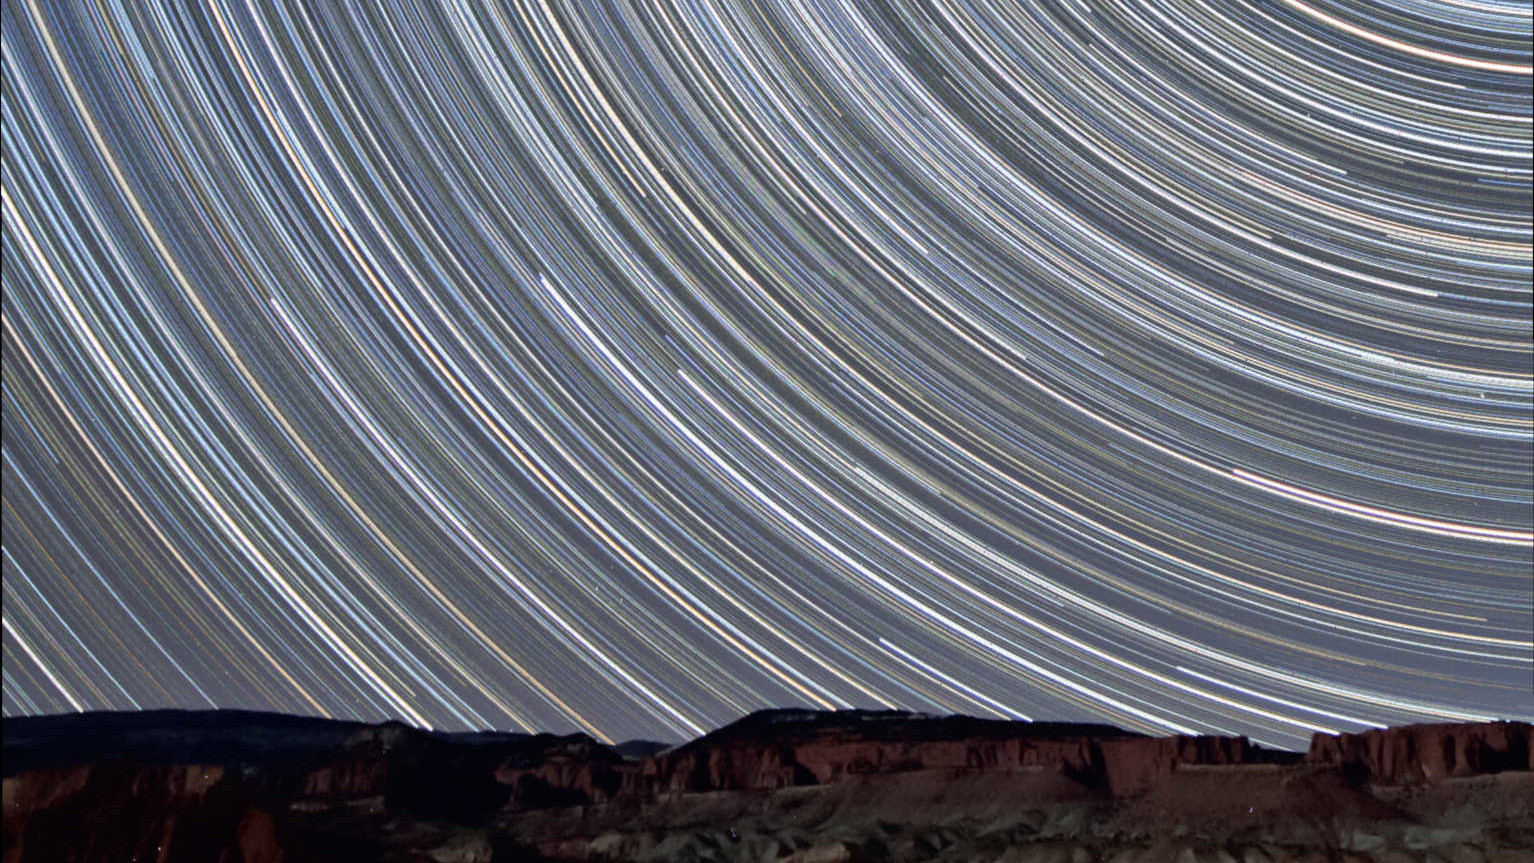 Wenige Meilen vor dem Capitol Reef Nationalpark in Utah (USA) entstanden diese Strichspuraufnahmen mit Blick nach Norden, die die Wanderung
der Sterne über den vom zunehmenden Mond beleuchteten roten Sandsteinfelsen zeigt. In diesem Summenbild sind 350 Aufnahmen mit einer Belichtungszeit
von je 90 Sekunden kombiniert (Gesamtbelichtungszeit: 525 Minuten = 8,75 Stunden). Entstanden ist das Bild mit einem 10-20mm Objektiv (bei 10mm
und f/4) an einer Canon DSLR vom Typ 450D. U. Dittler